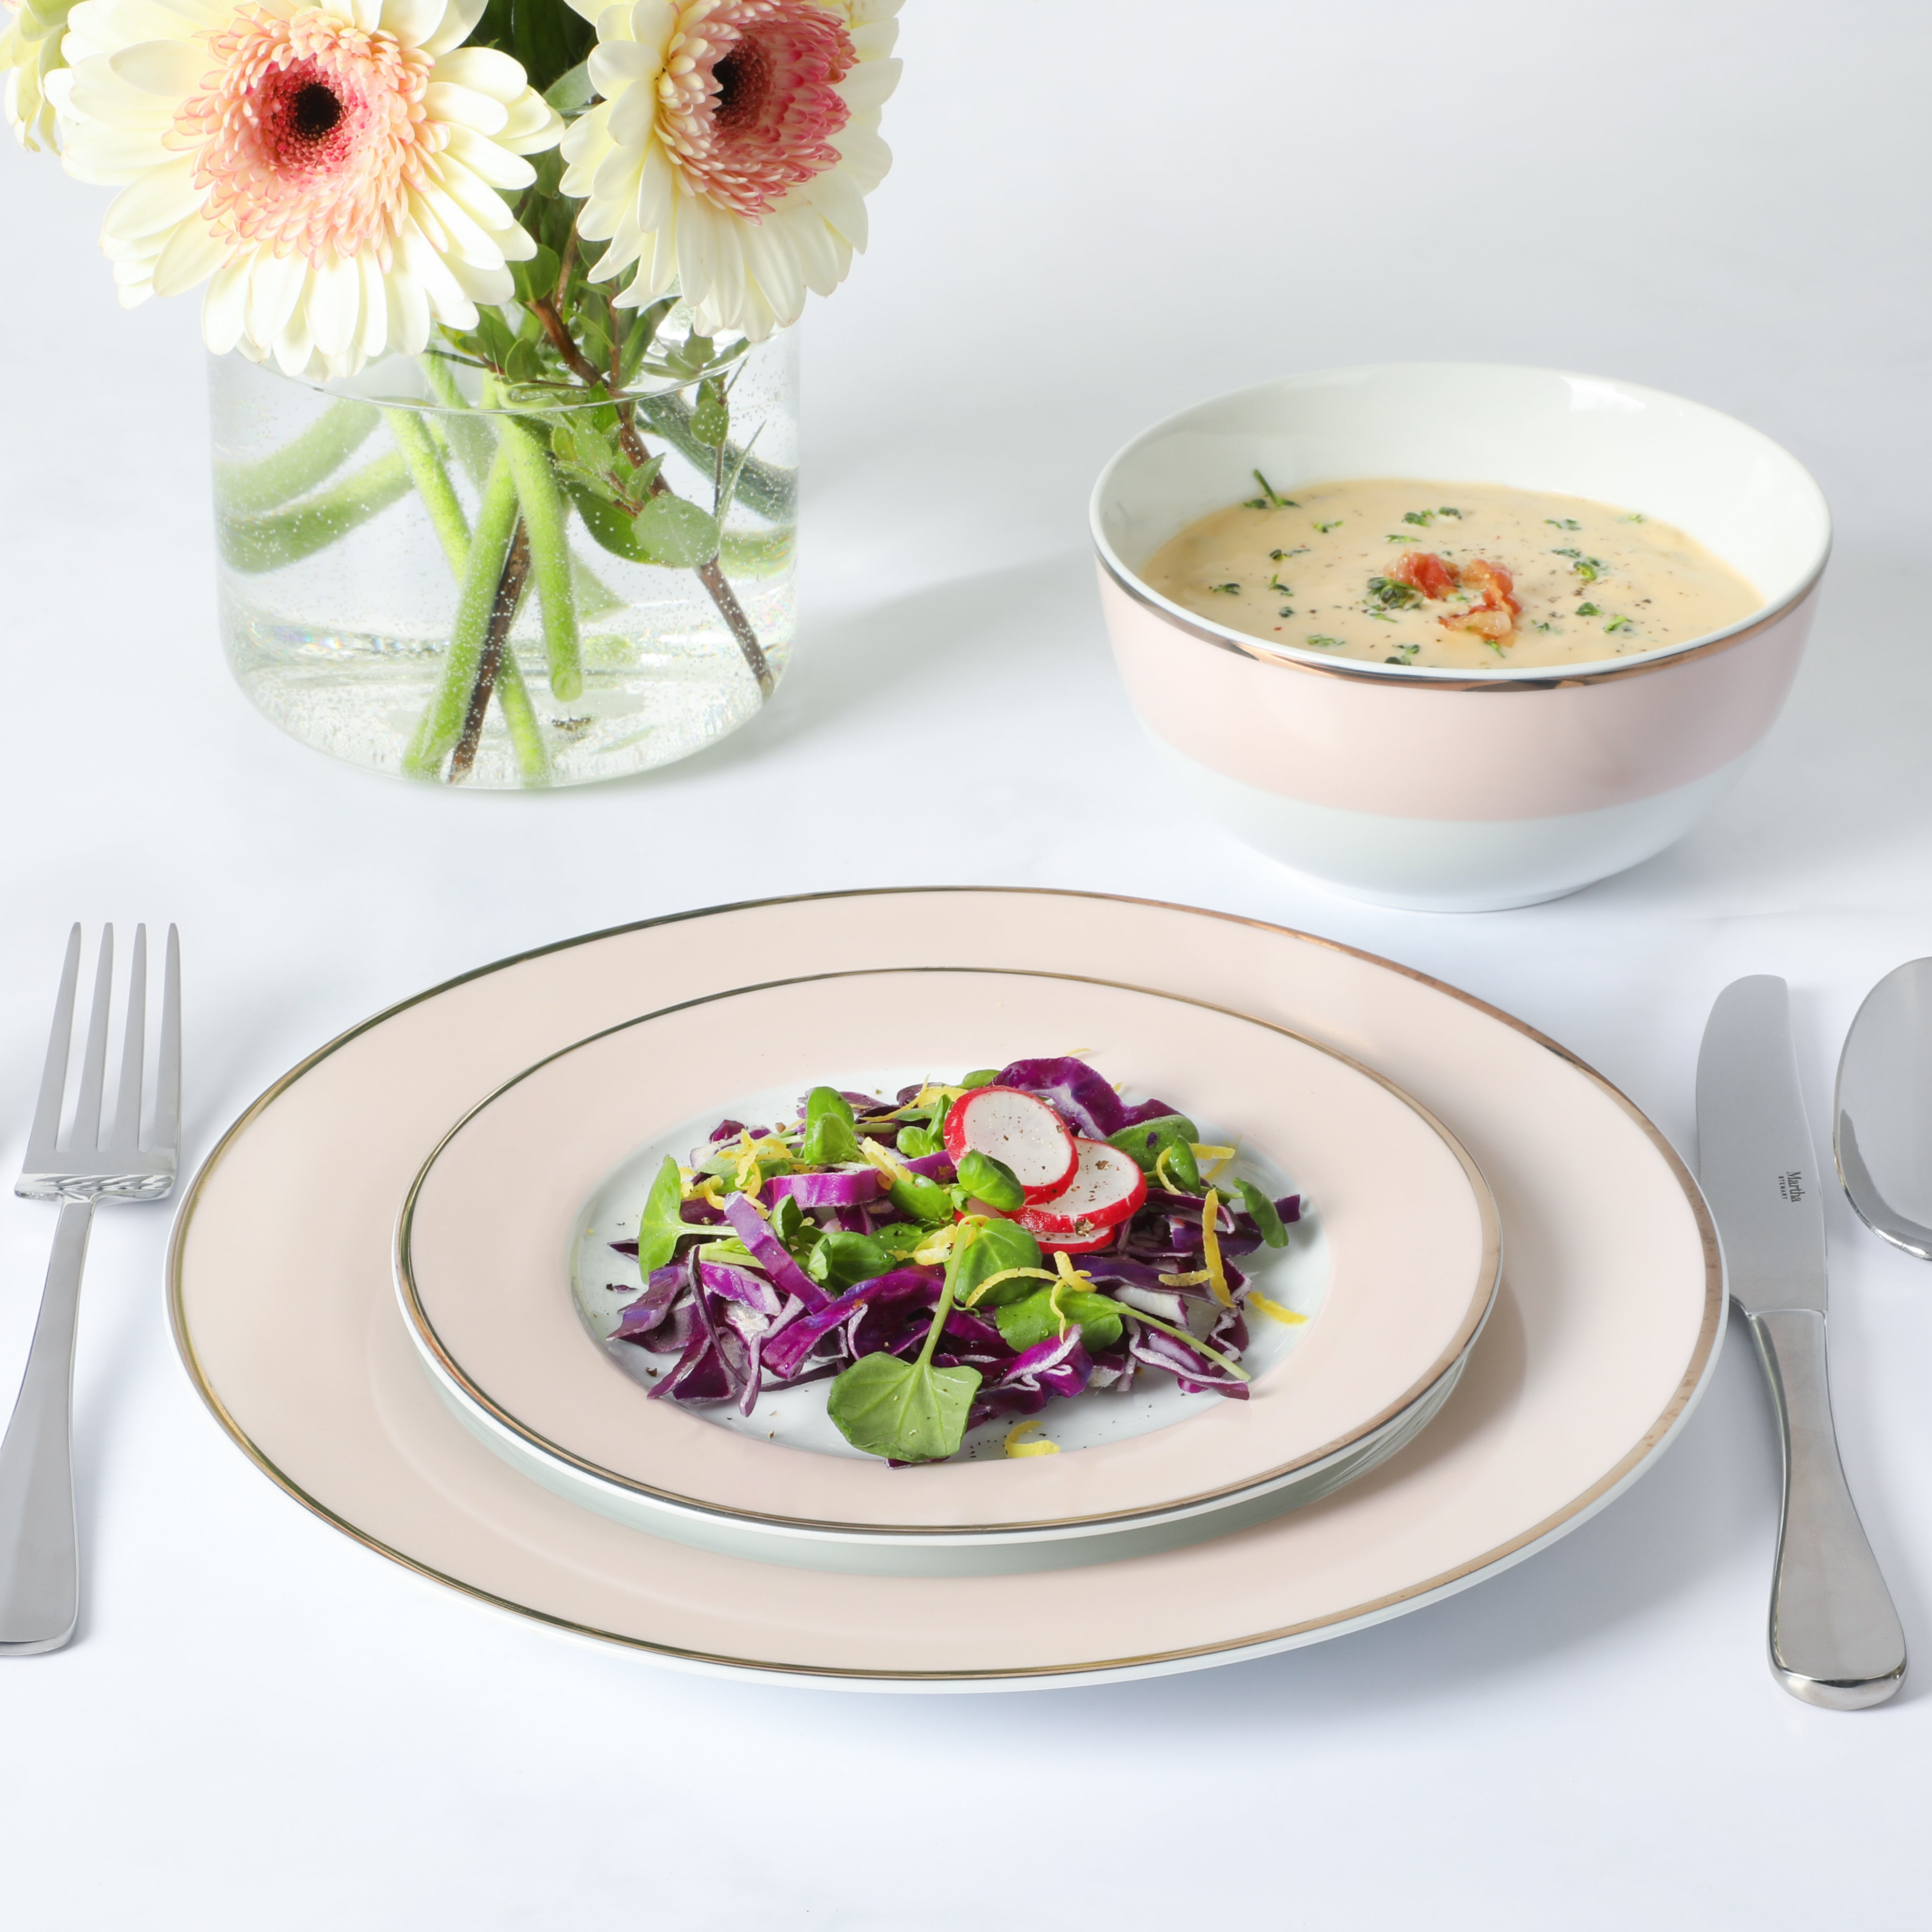 Chop 'N Twist: Salad Cutting Bowl – MMG Gifts